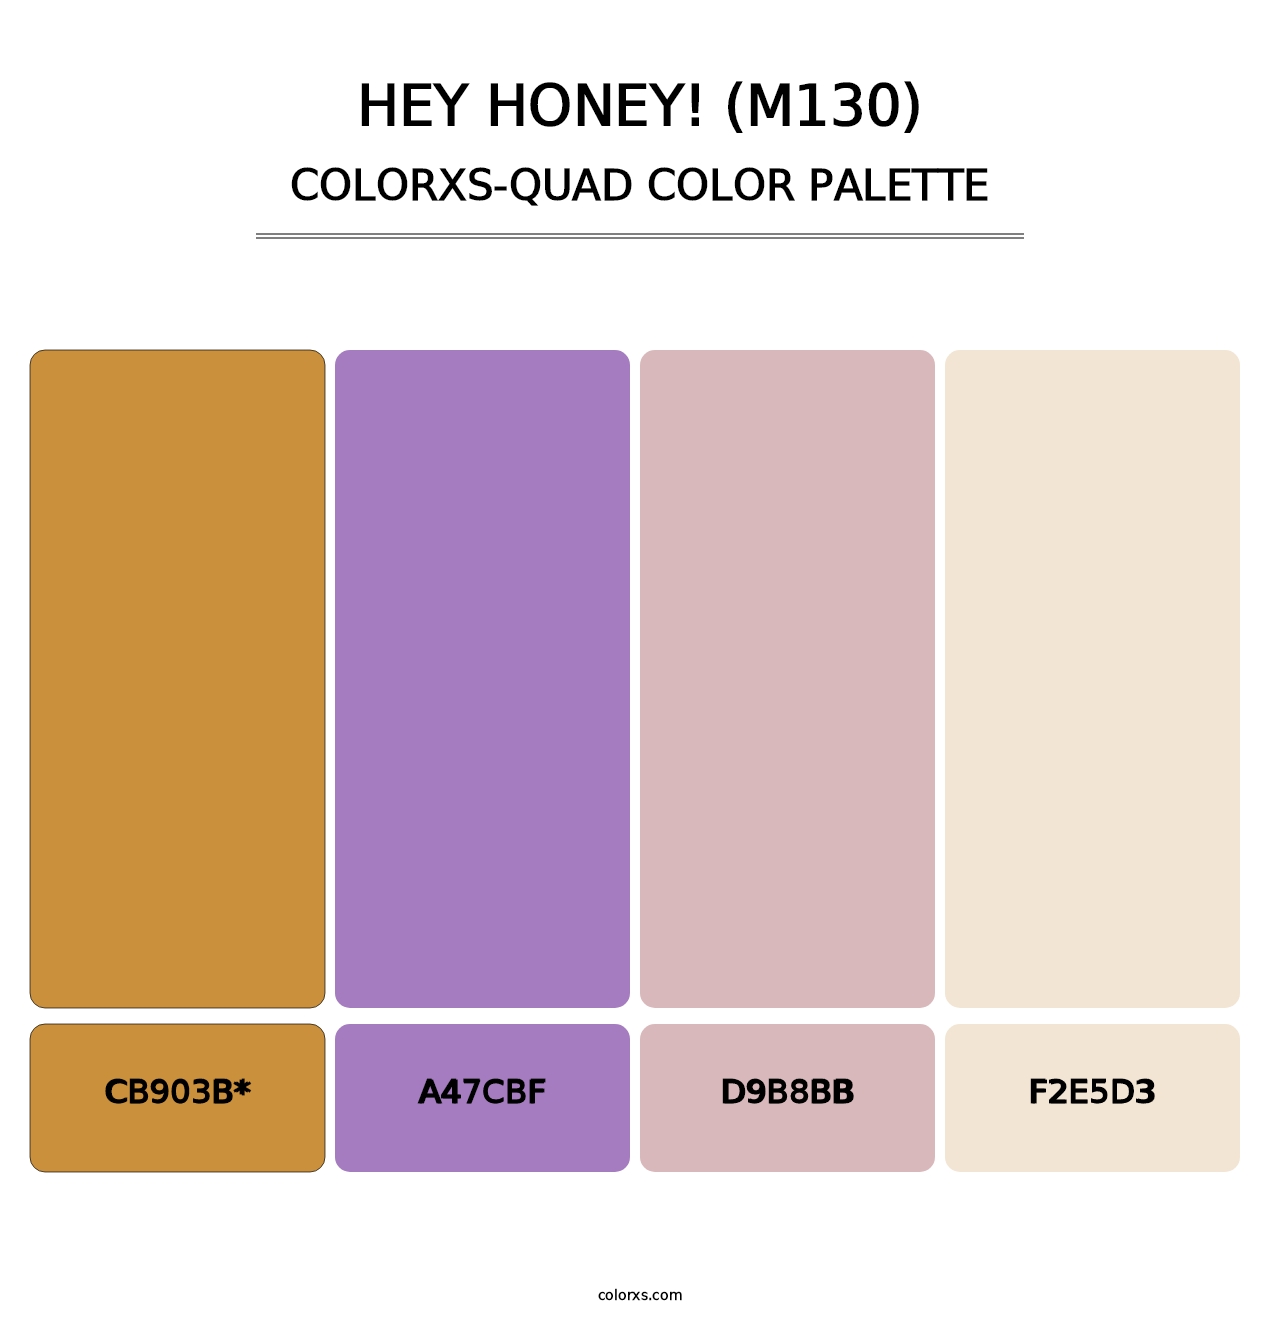 Hey Honey! (M130) - Colorxs Quad Palette